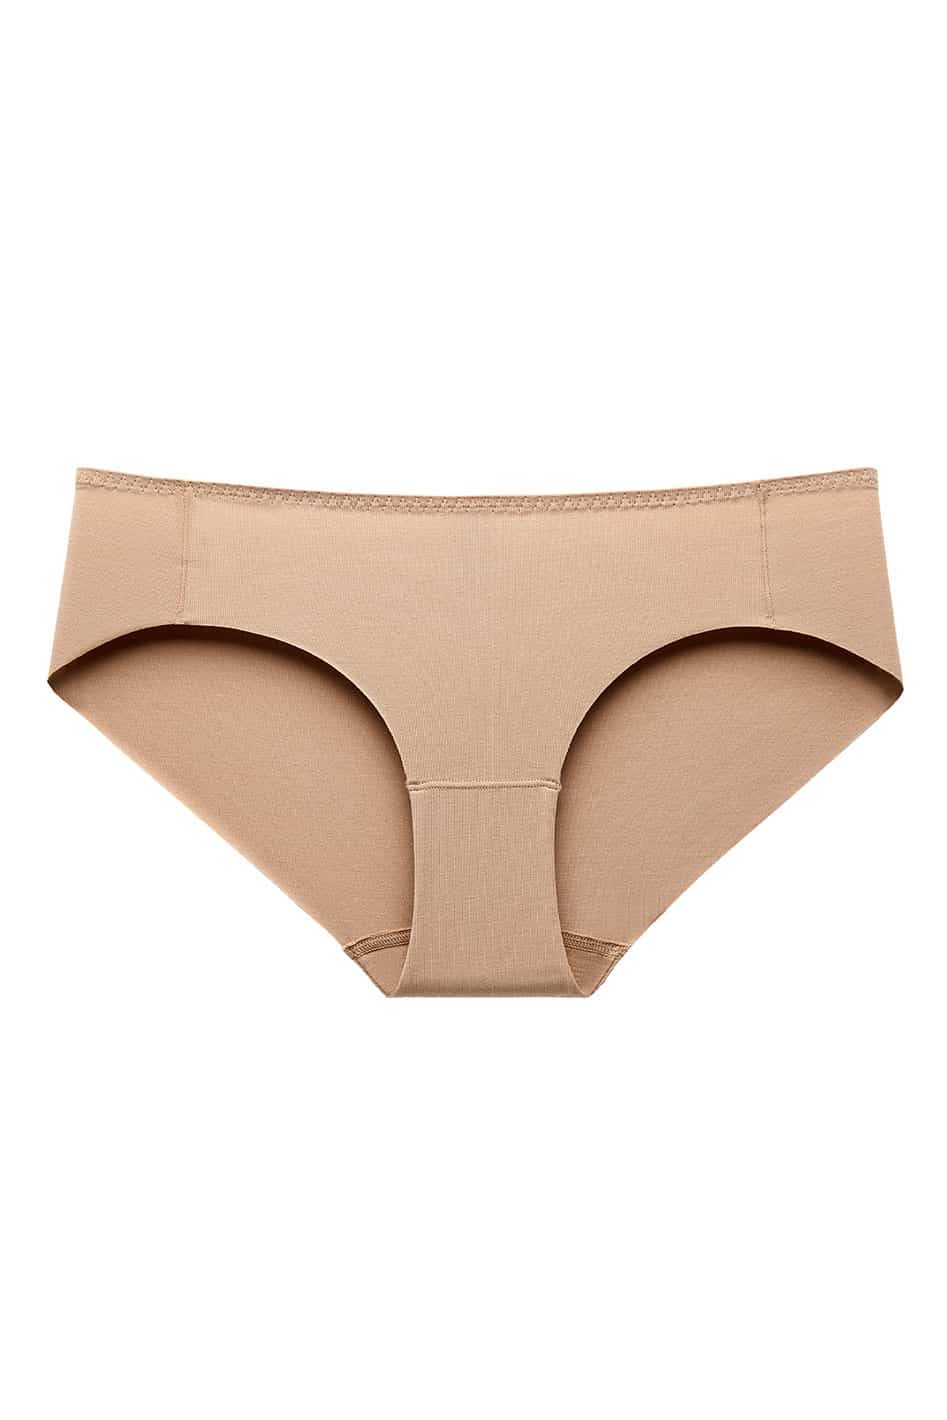 Stance Underwear - Beech